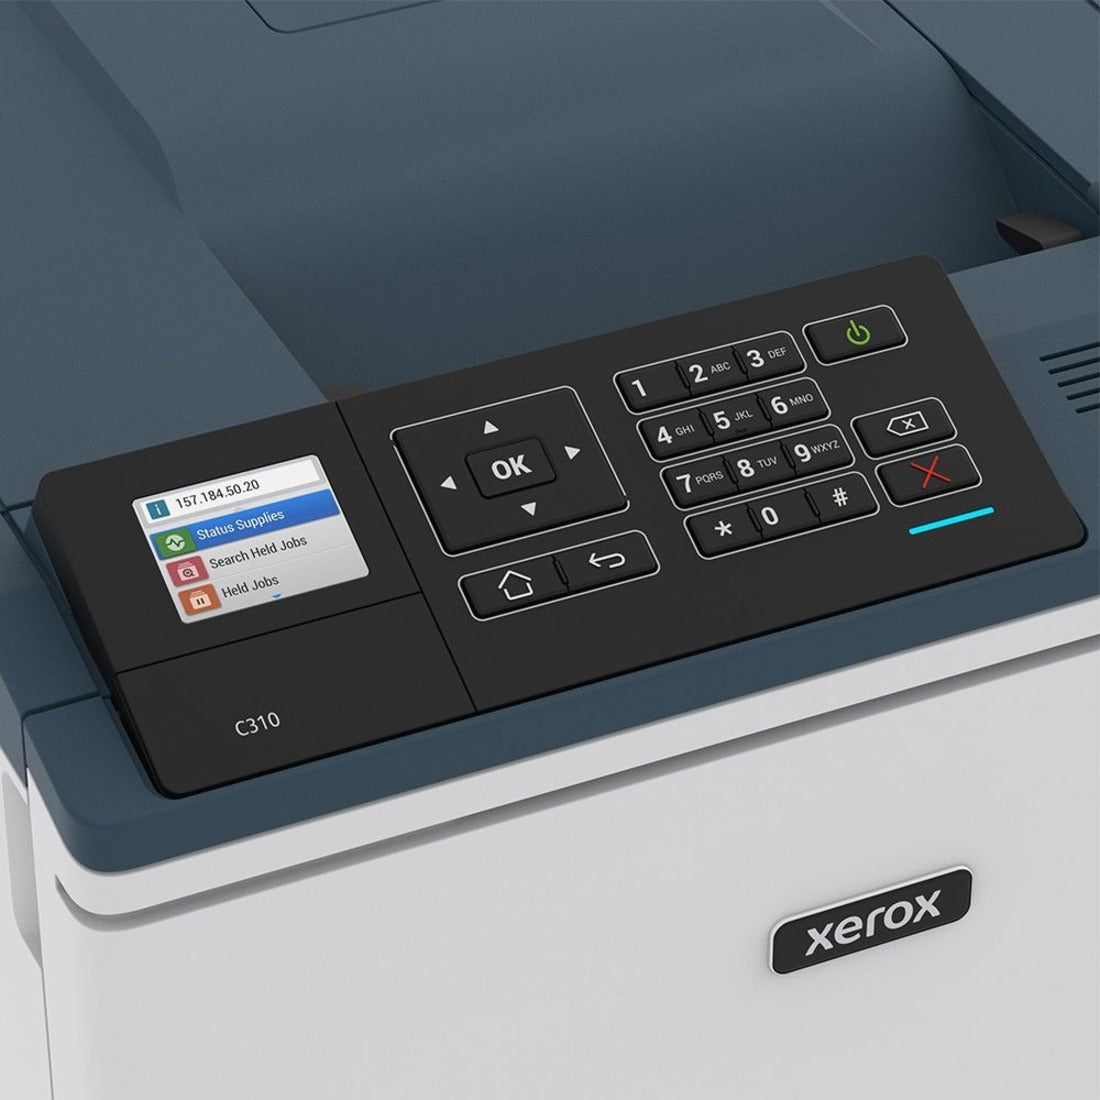 طابعة ألوان Xerox C310/DNI C310 ، ليزرية ، لاسلكية ، طباعة ذاتية الوجه تلقائية ، 35 صفحة في الدقيقة ، 1200 × 1200 نقطة في البوصة